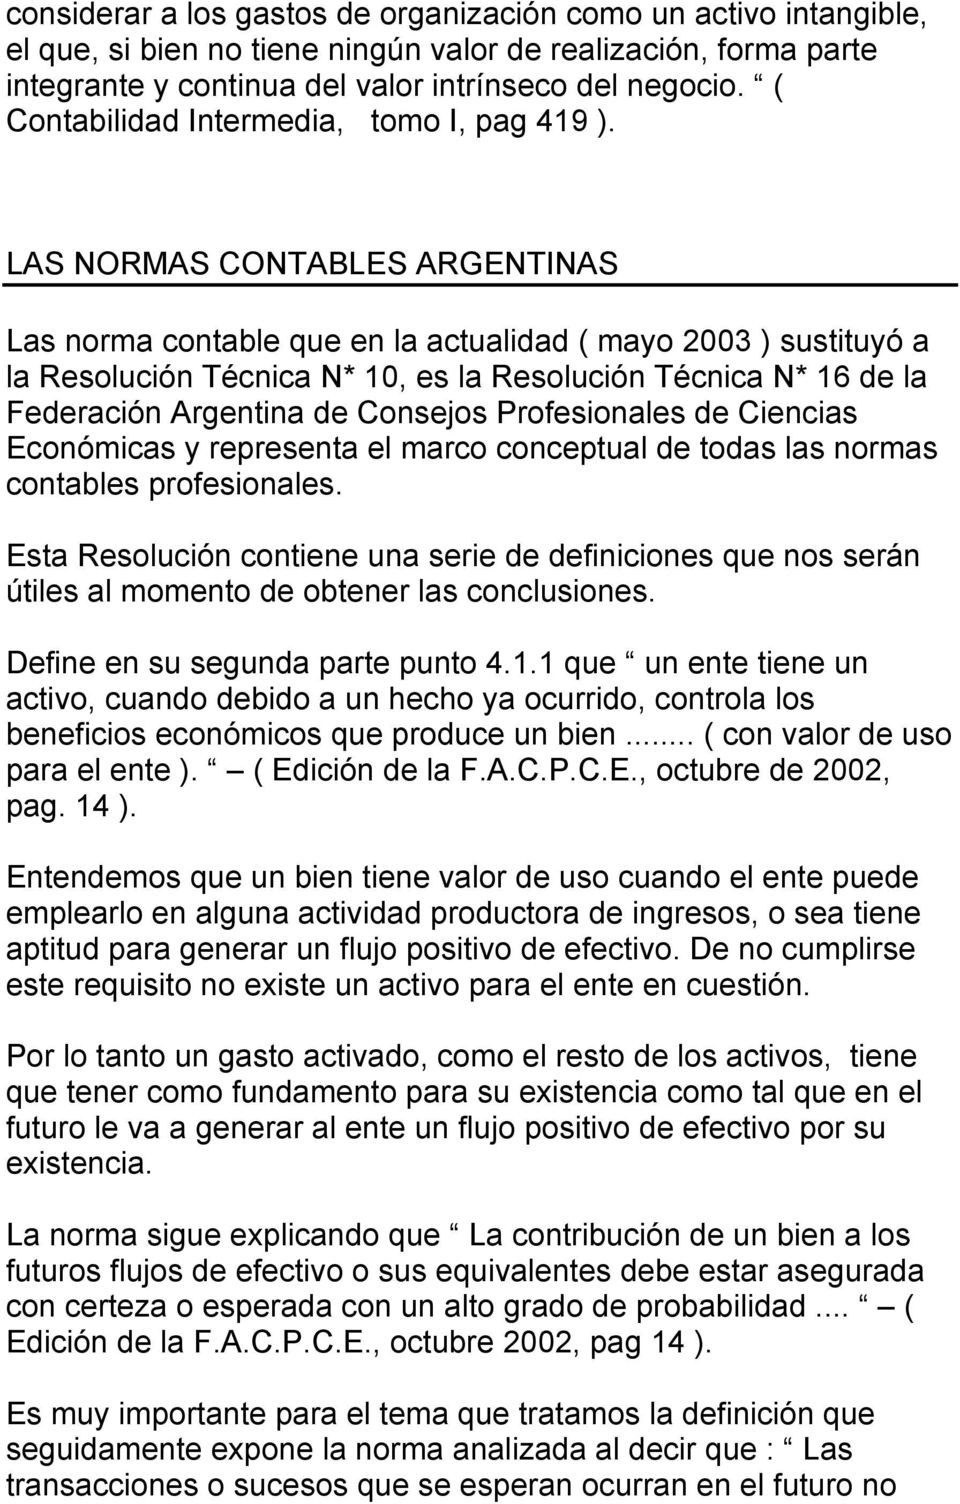 LAS NORMAS CONTABLES ARGENTINAS Las norma contable que en la actualidad ( mayo 2003 ) sustituyó a la Resolución Técnica N* 10, es la Resolución Técnica N* 16 de la Federación Argentina de Consejos